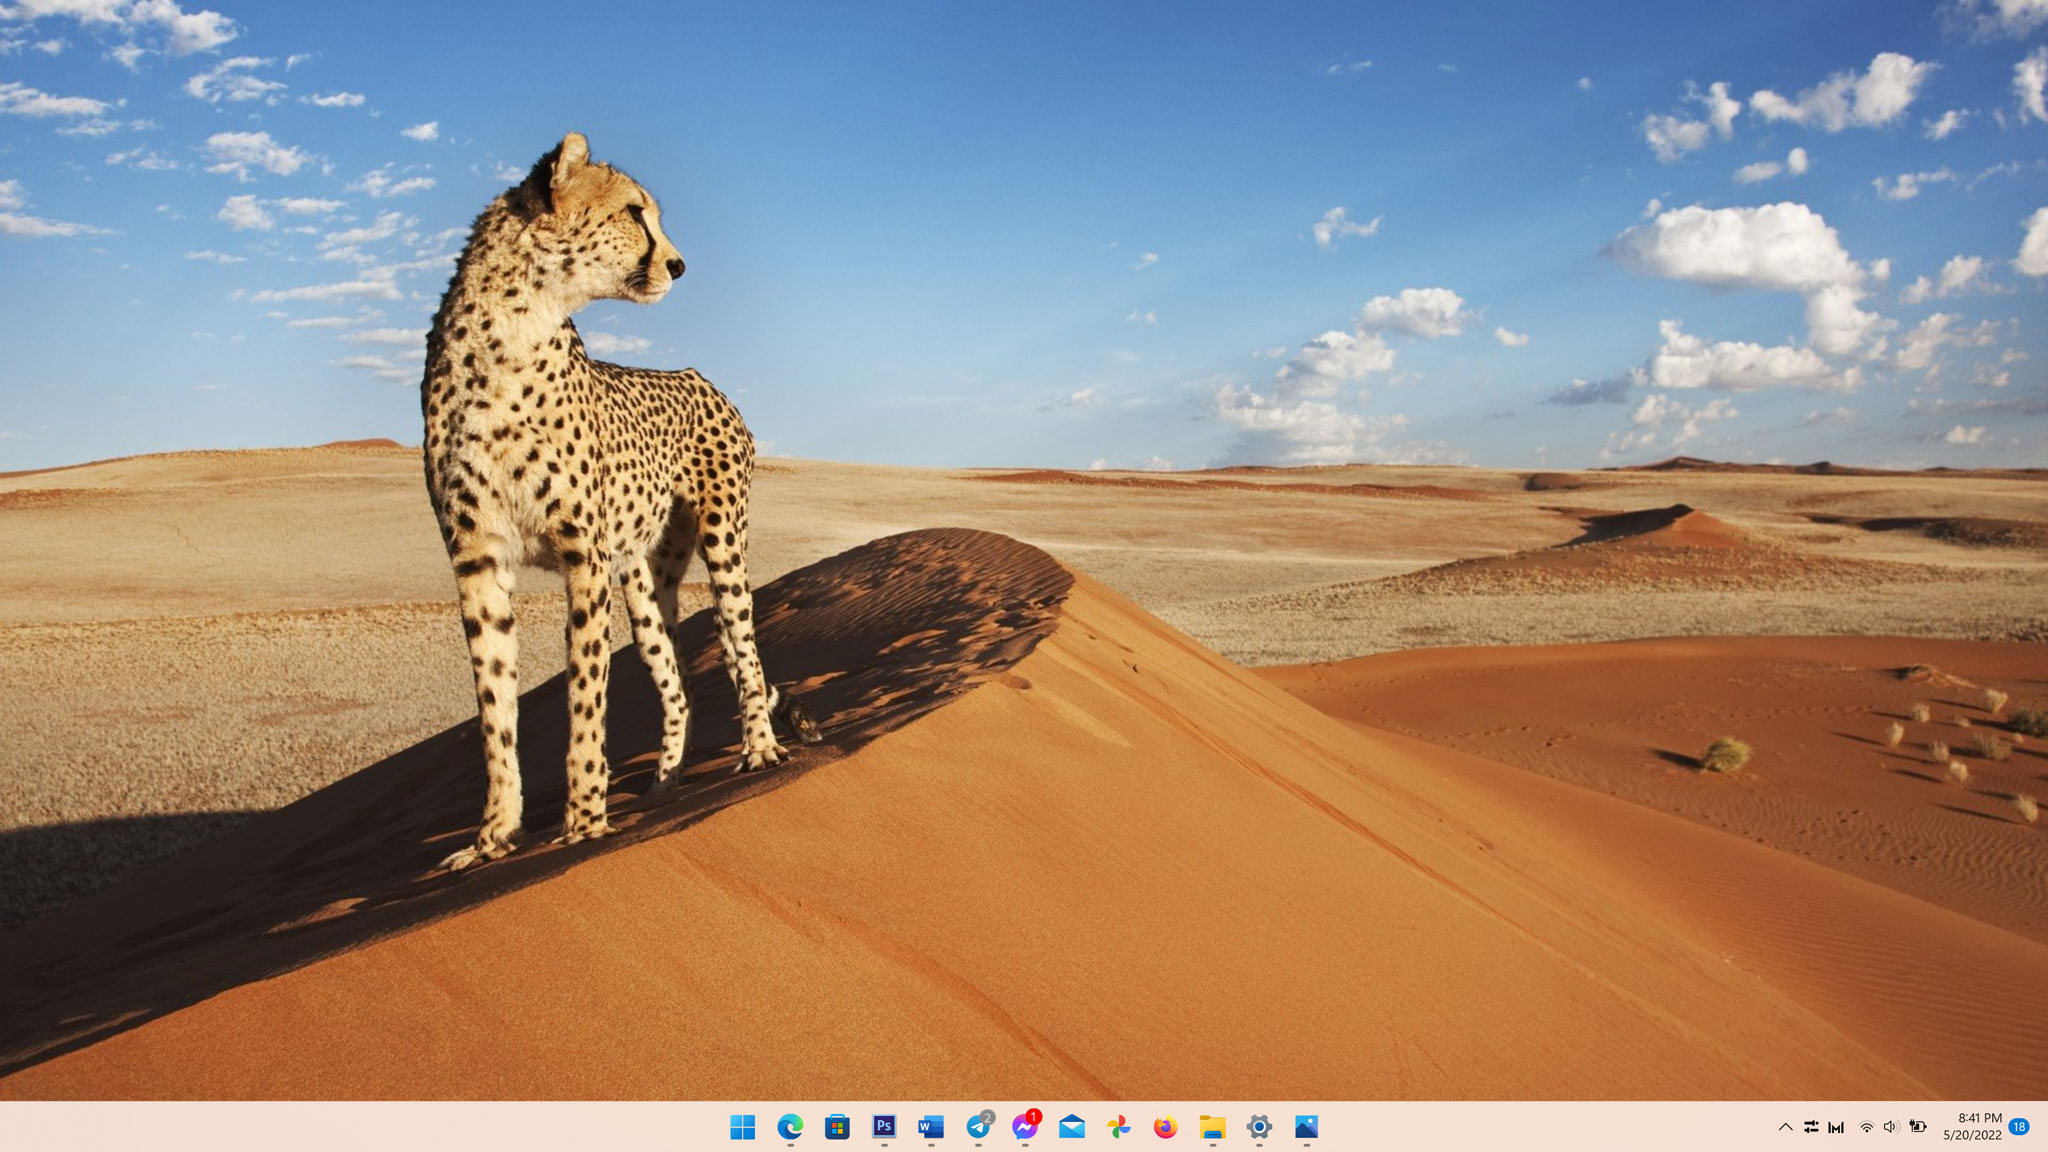 Tự động thay đổi hình nền: Bạn muốn máy tính của mình luôn cập nhật và mới mẻ nhưng lại không muốn tốn nhiều thời gian để thay đổi hình nền? Thật may mắn, Windows 11 mang đến tính năng tự động thay đổi hình nền. Với sự kết hợp của công nghệ và nghệ thuật, bạn sẽ luôn có một giao diện độc đáo và đẹp mắt.